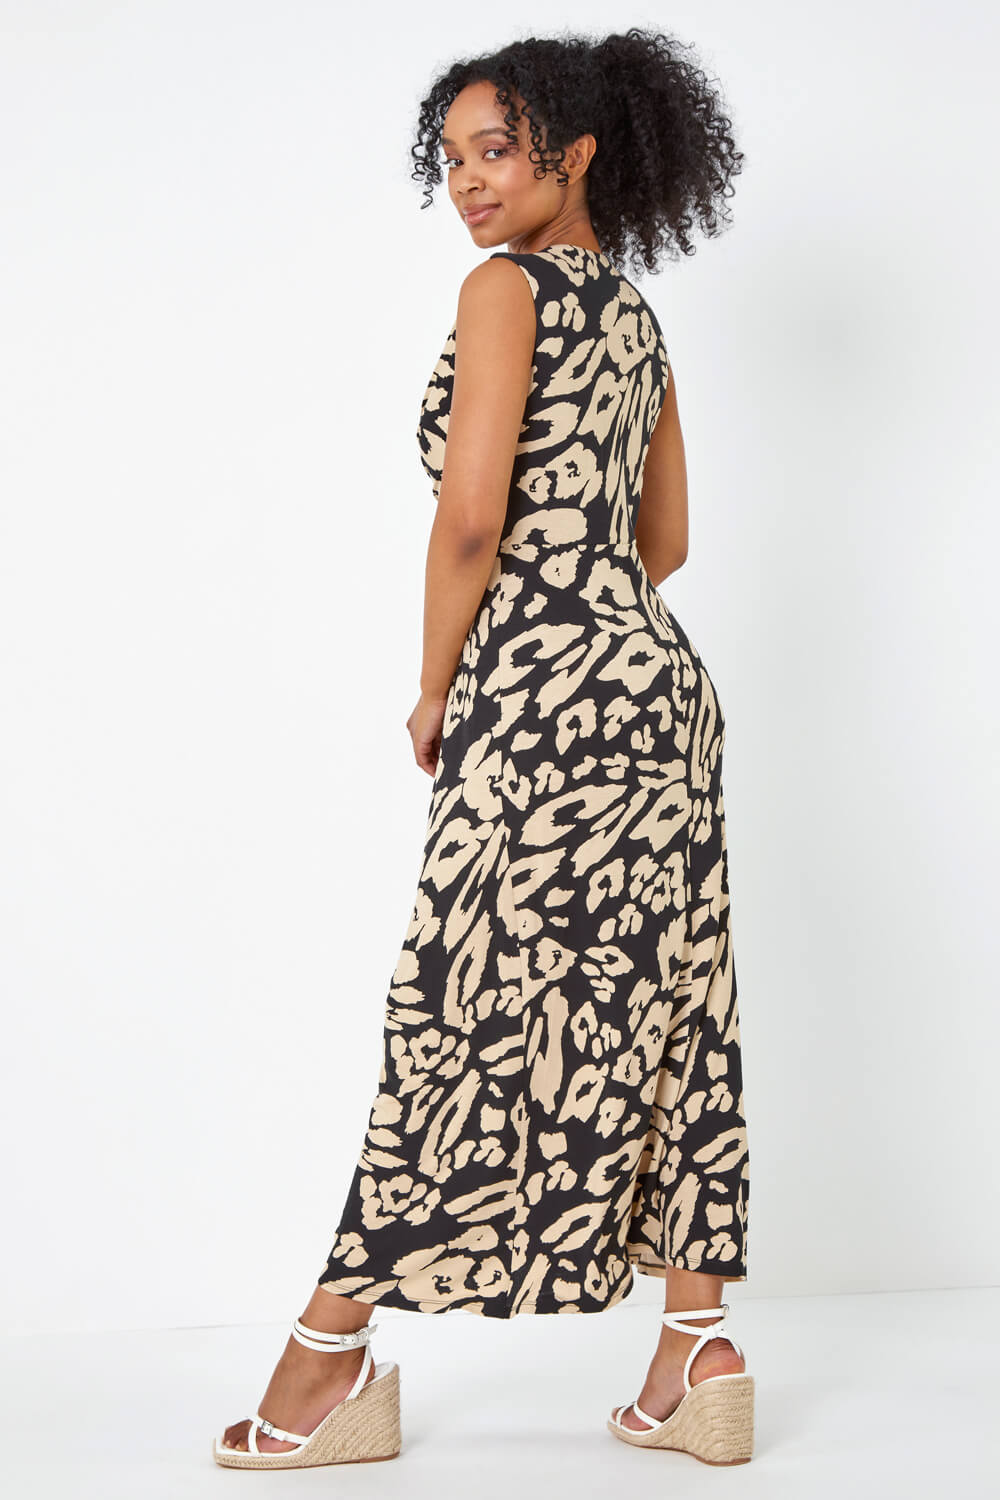 Black Petite Leopard Print Twist Jersey Maxi Dress, Image 3 of 5